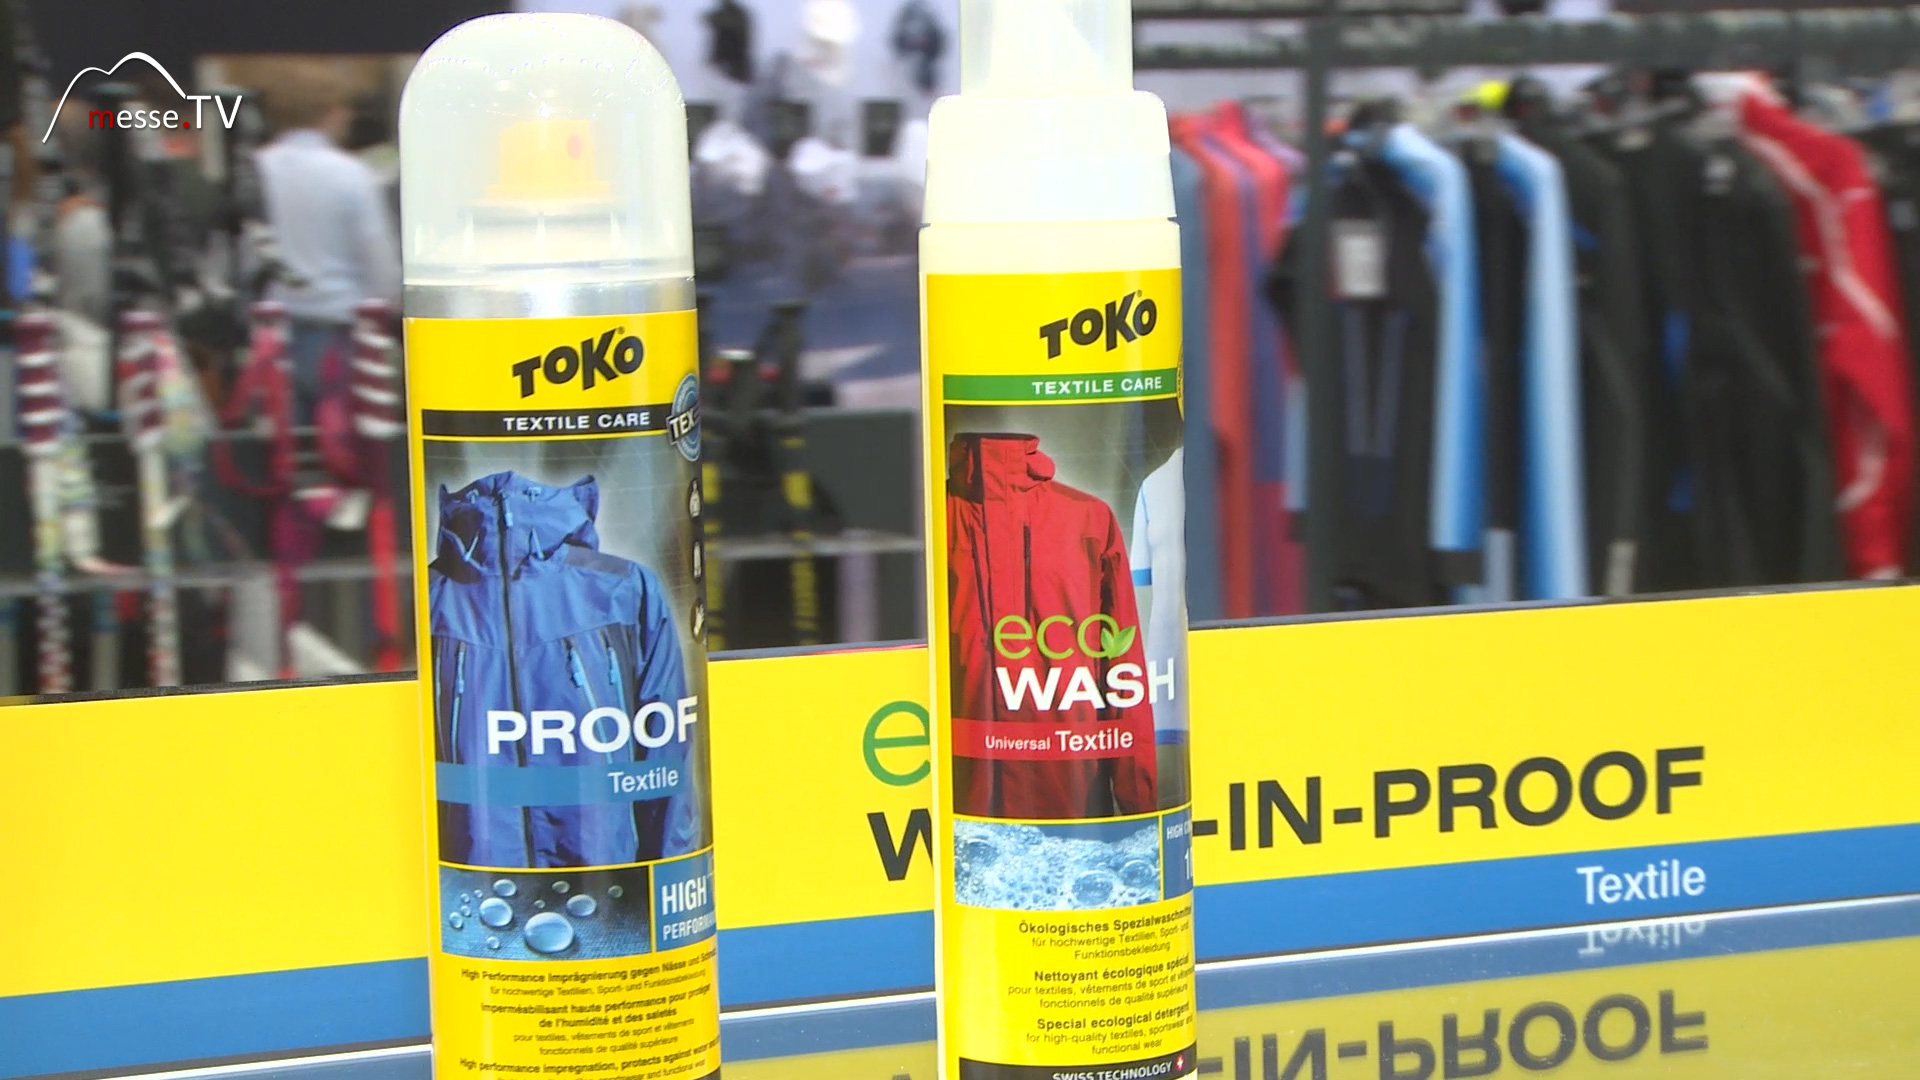 Eco Wash Impraegnierwaschmittel Toko Ispo 2017